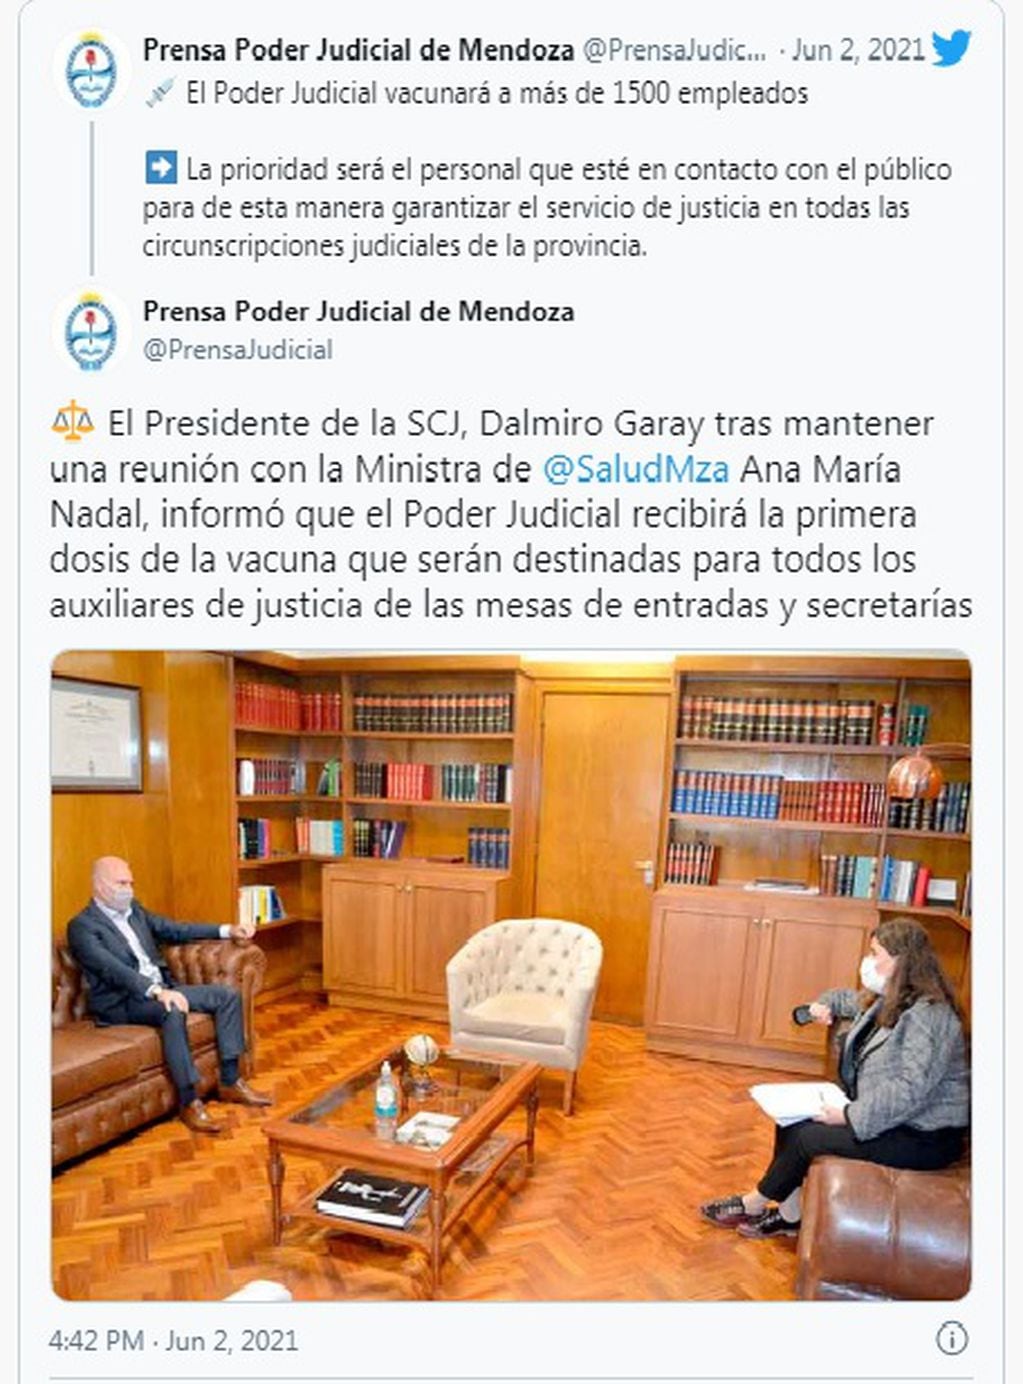 El Twit donde se informa de la reunión entre Damiro Garay y Ana María Nadal.